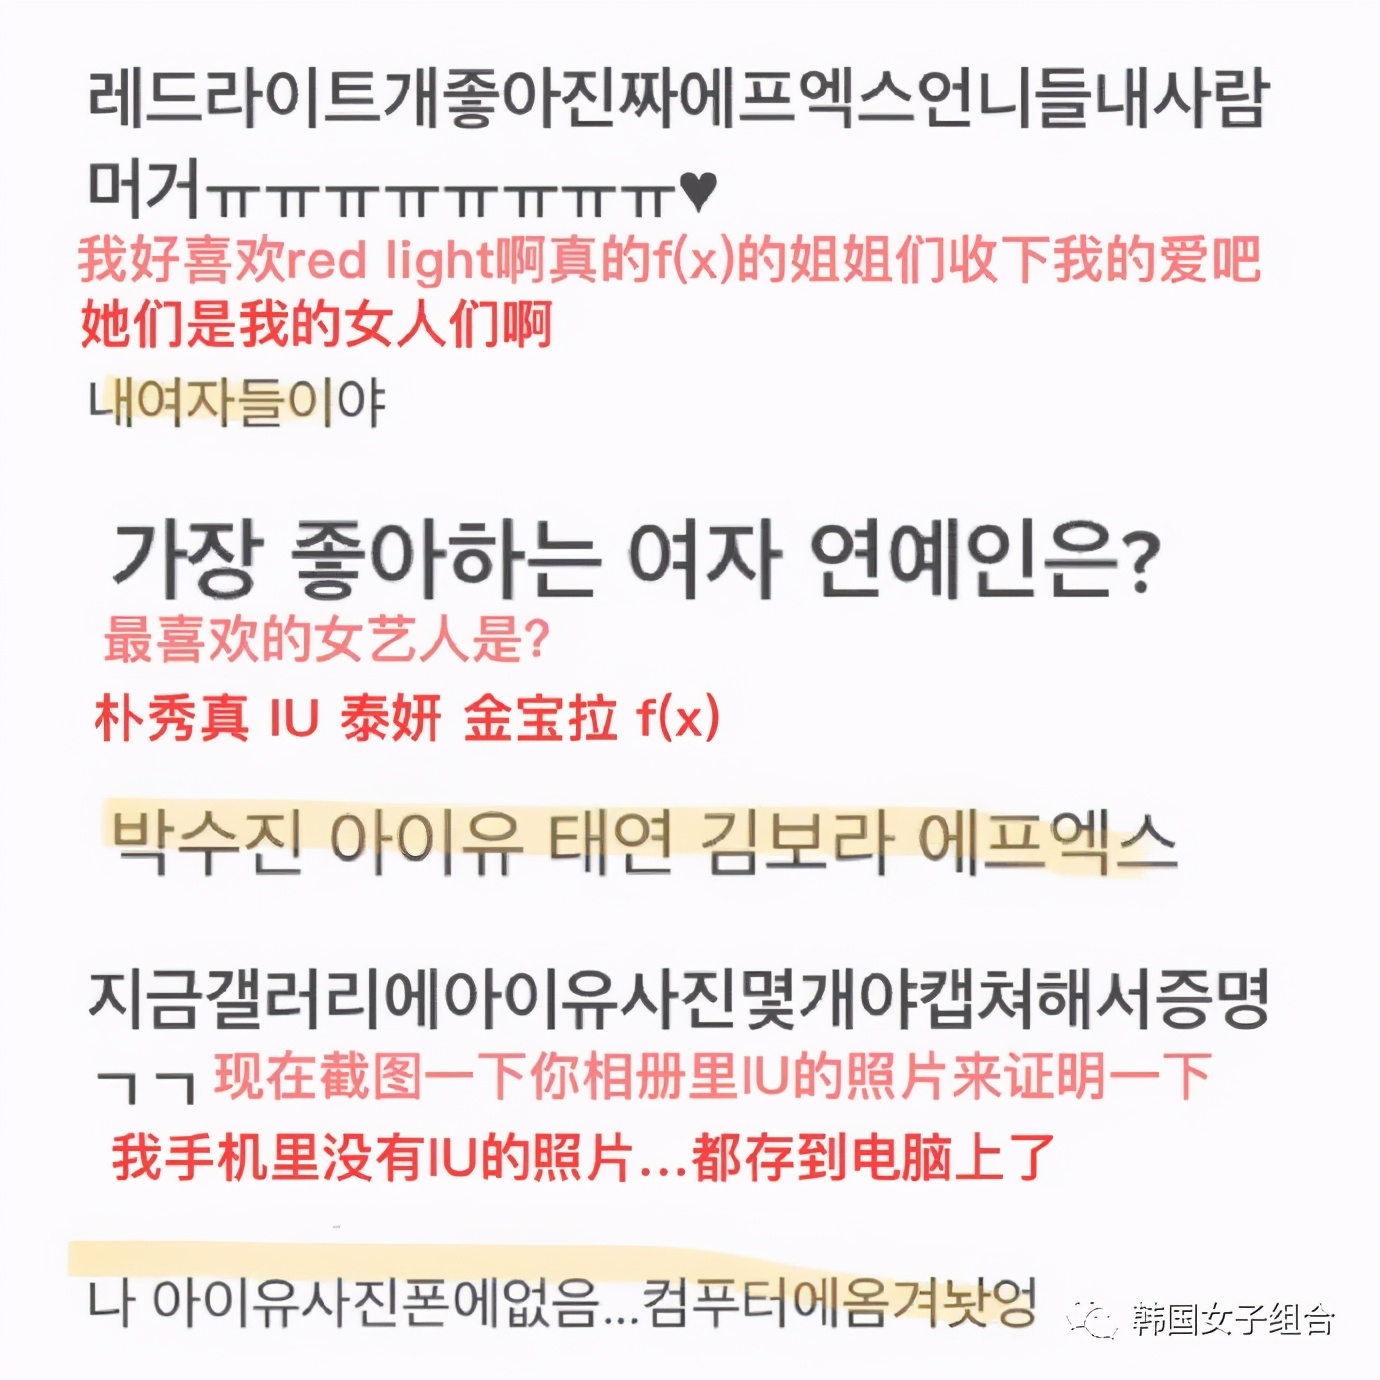 韩网友公开的，SM新女团柳智敏过去的提问箱